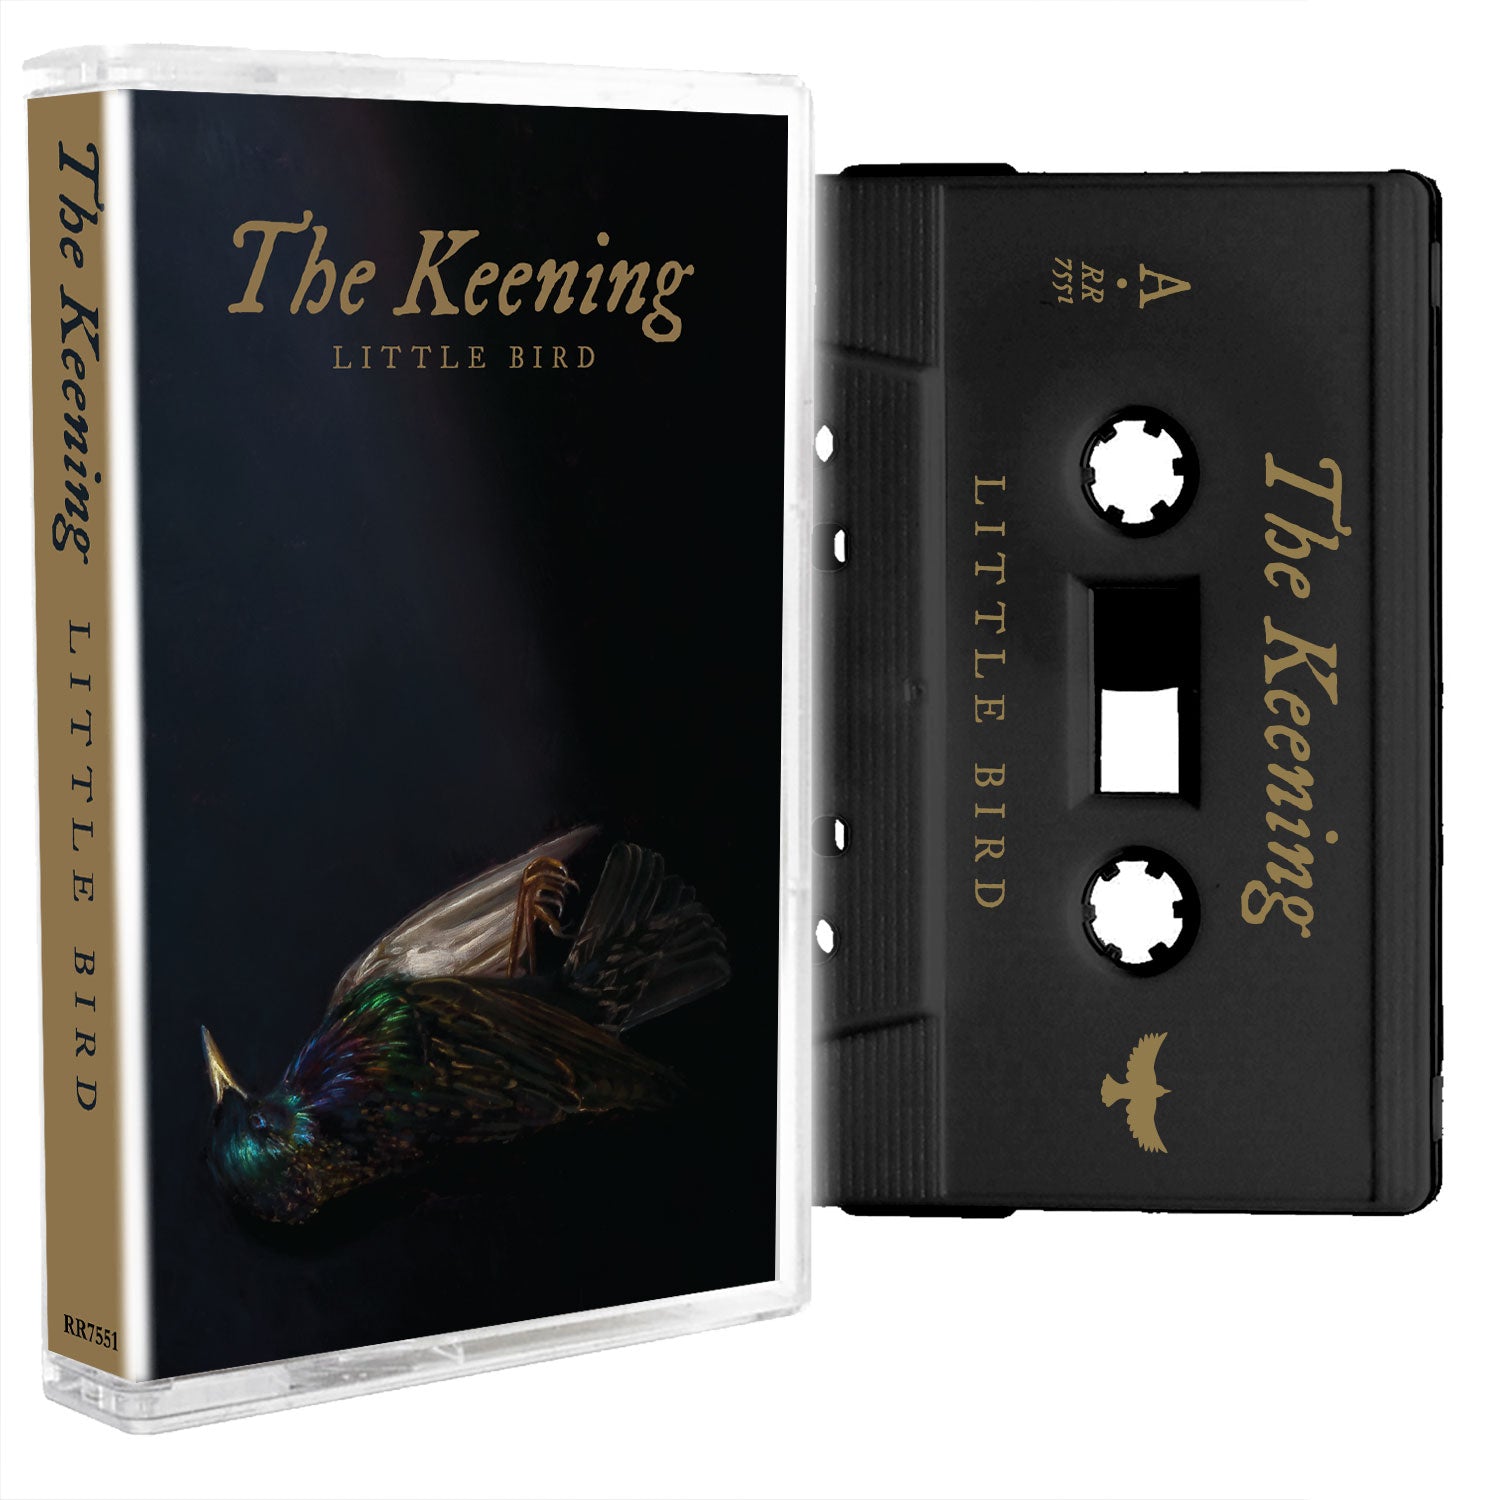 The Keening "Little Bird" Cassette